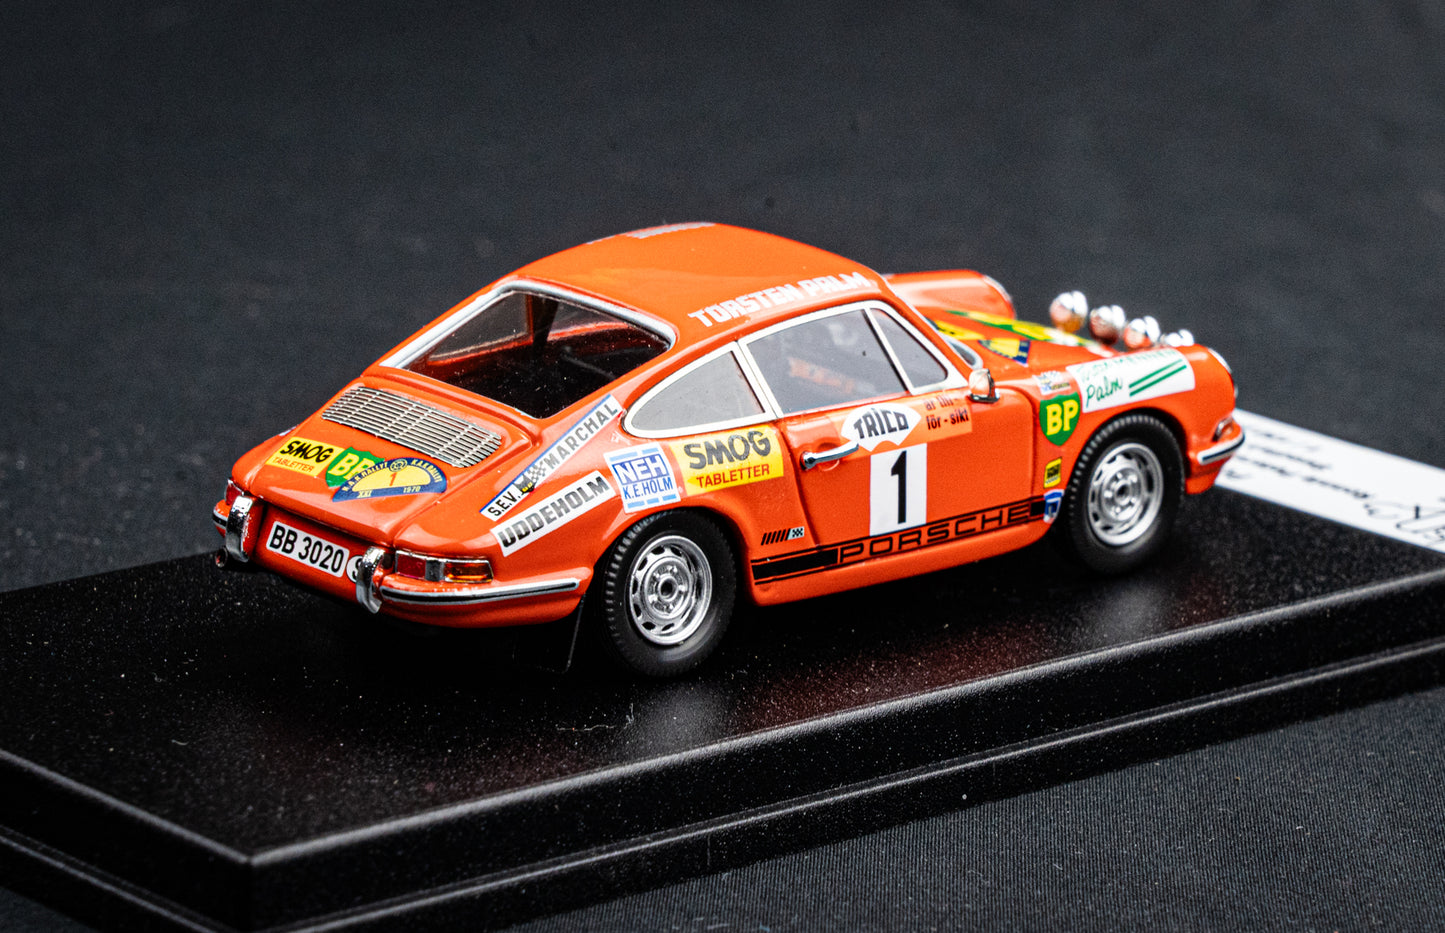 Porsche 911 L #1 Ronnie Peterson / Svedberg - Rallye Schweden 1970 lim. 150 Stk. Trofeu DSN 1:43